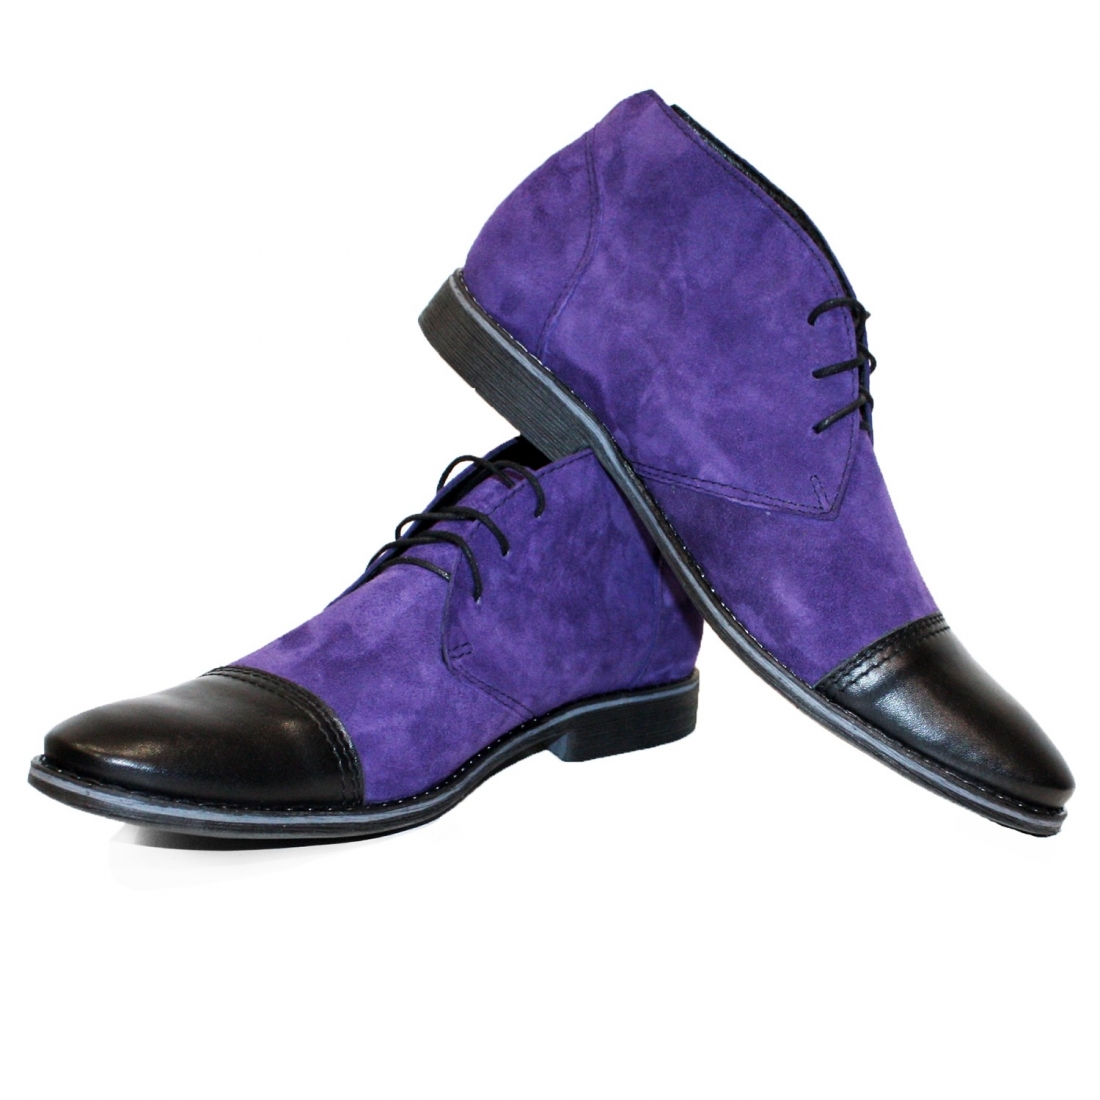 Modello Vilgero - чукка мужские - Handmade Colorful Italian Leather Shoes